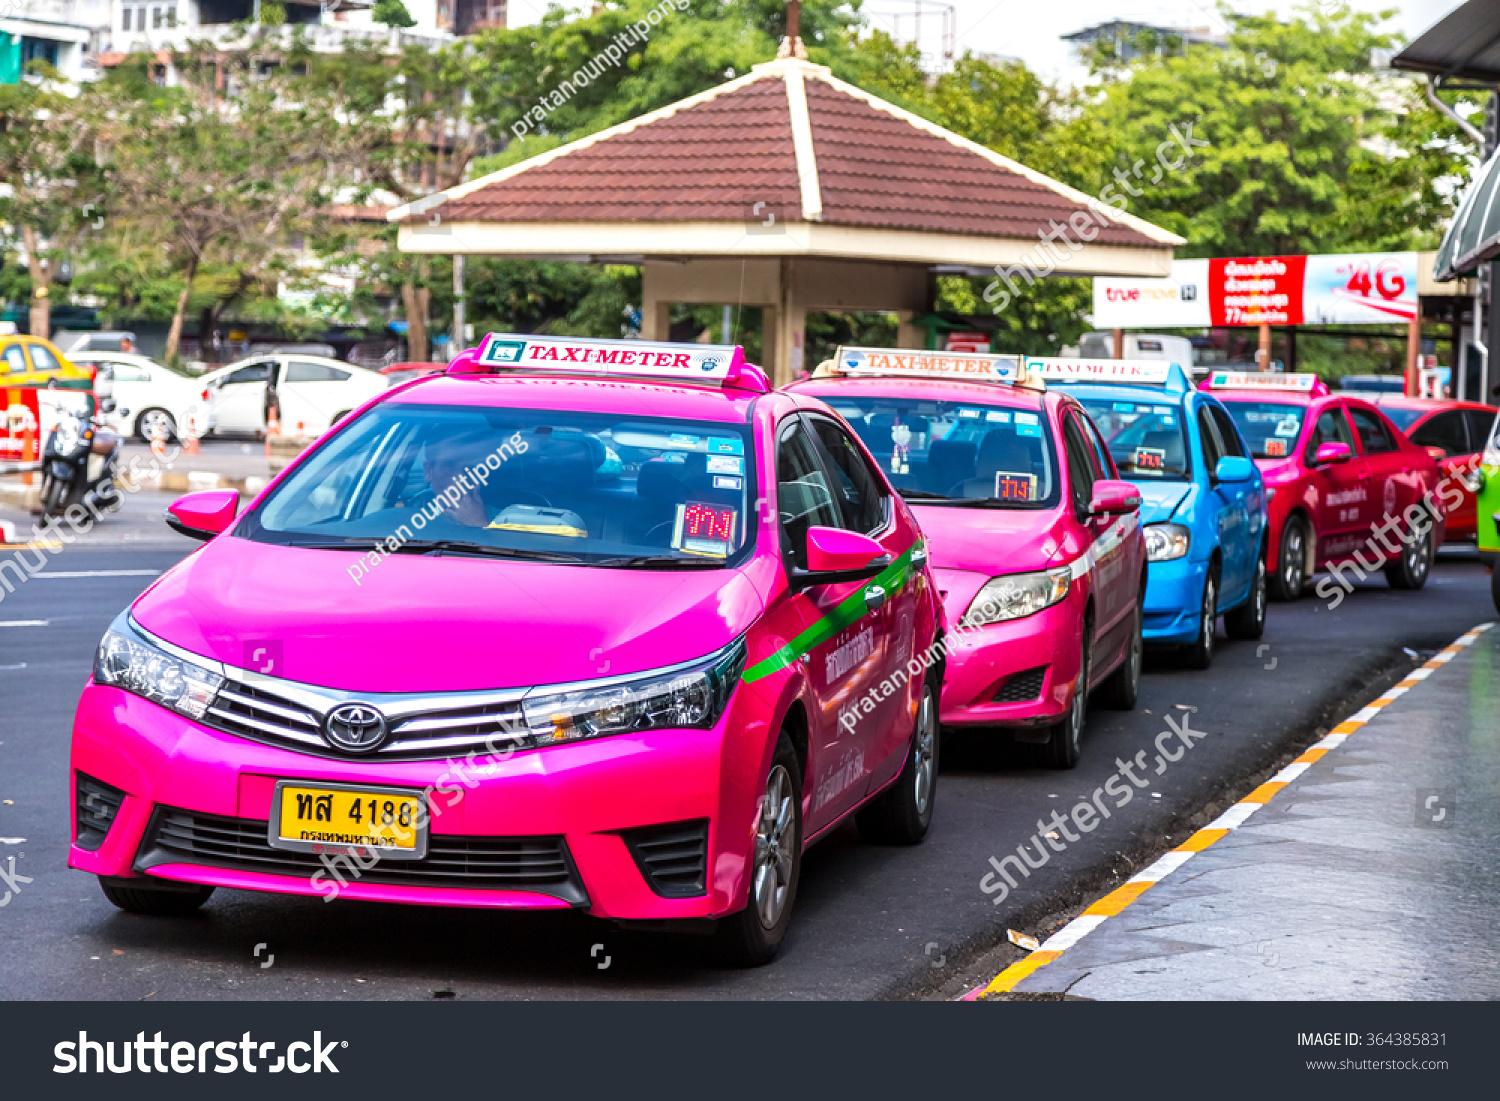 Такси из аэропорта бангкока